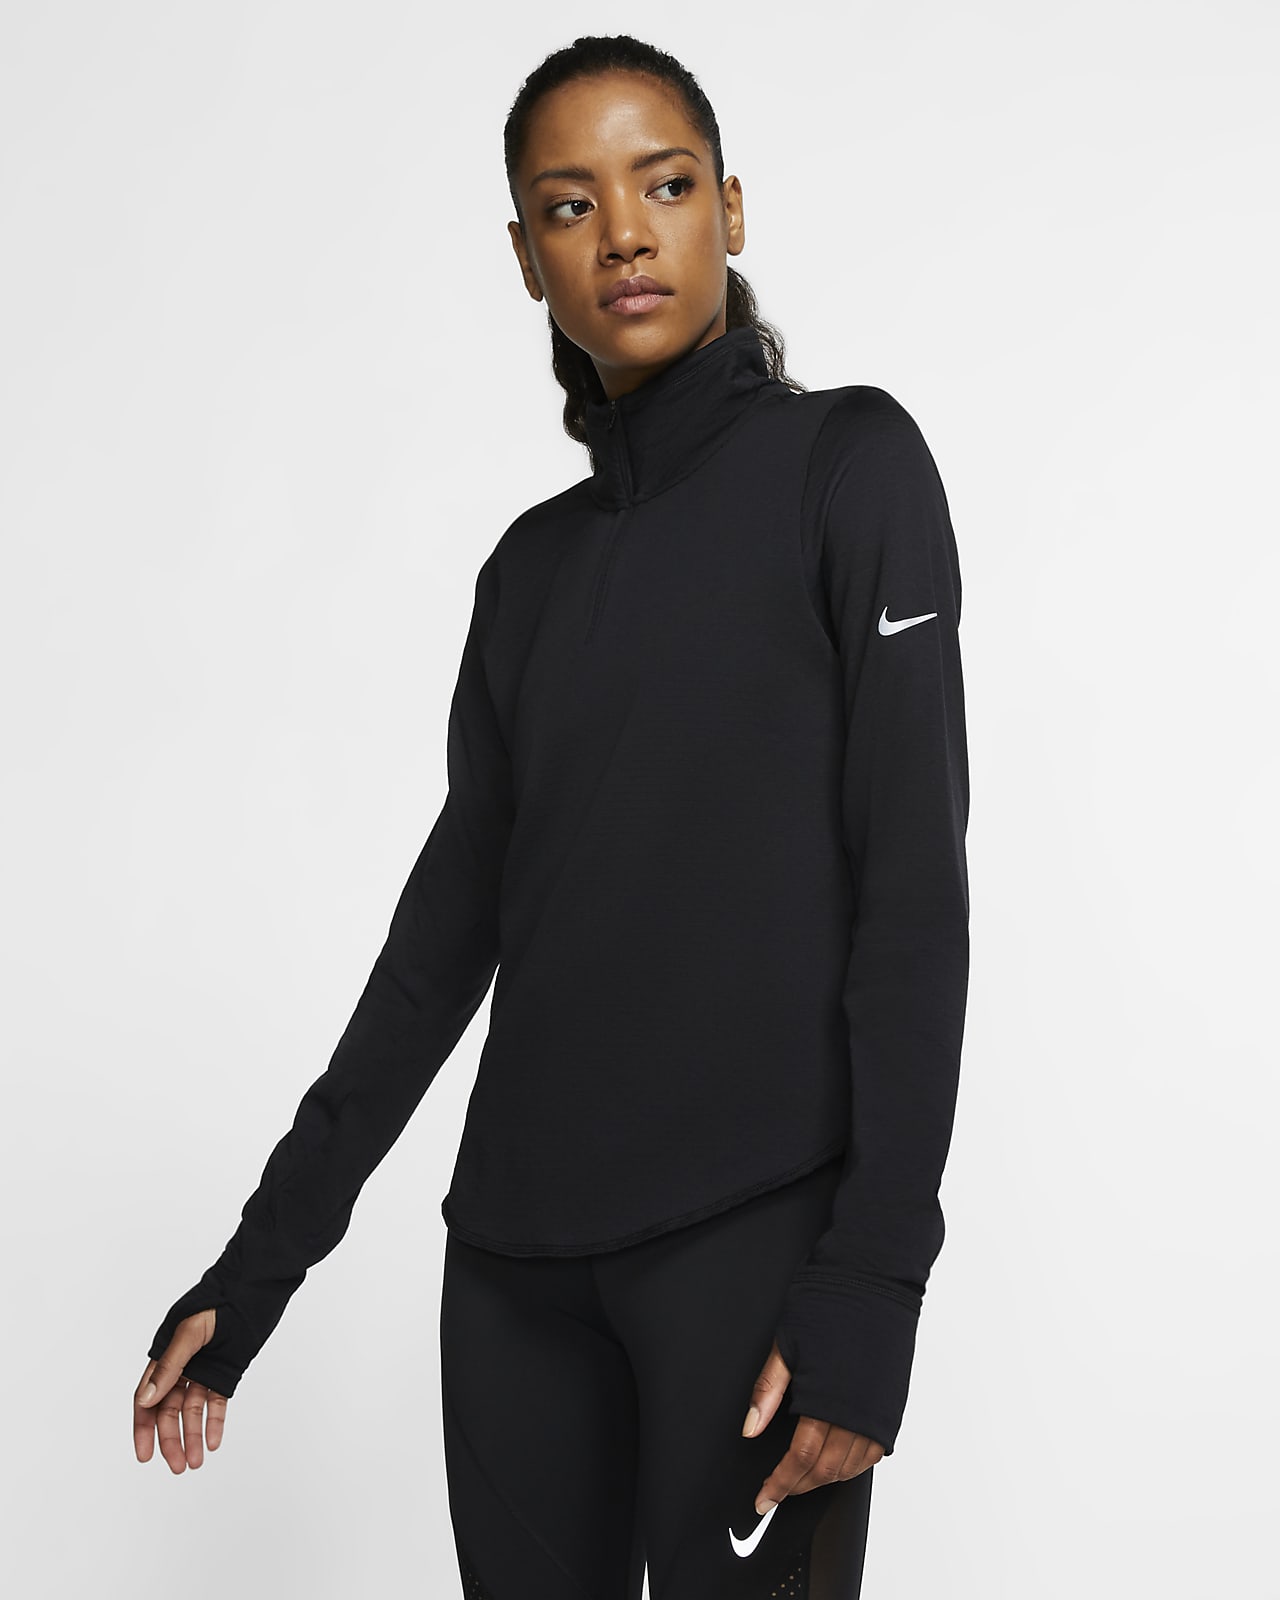 Nike Sphere Element Women's Half-Zip Running Top